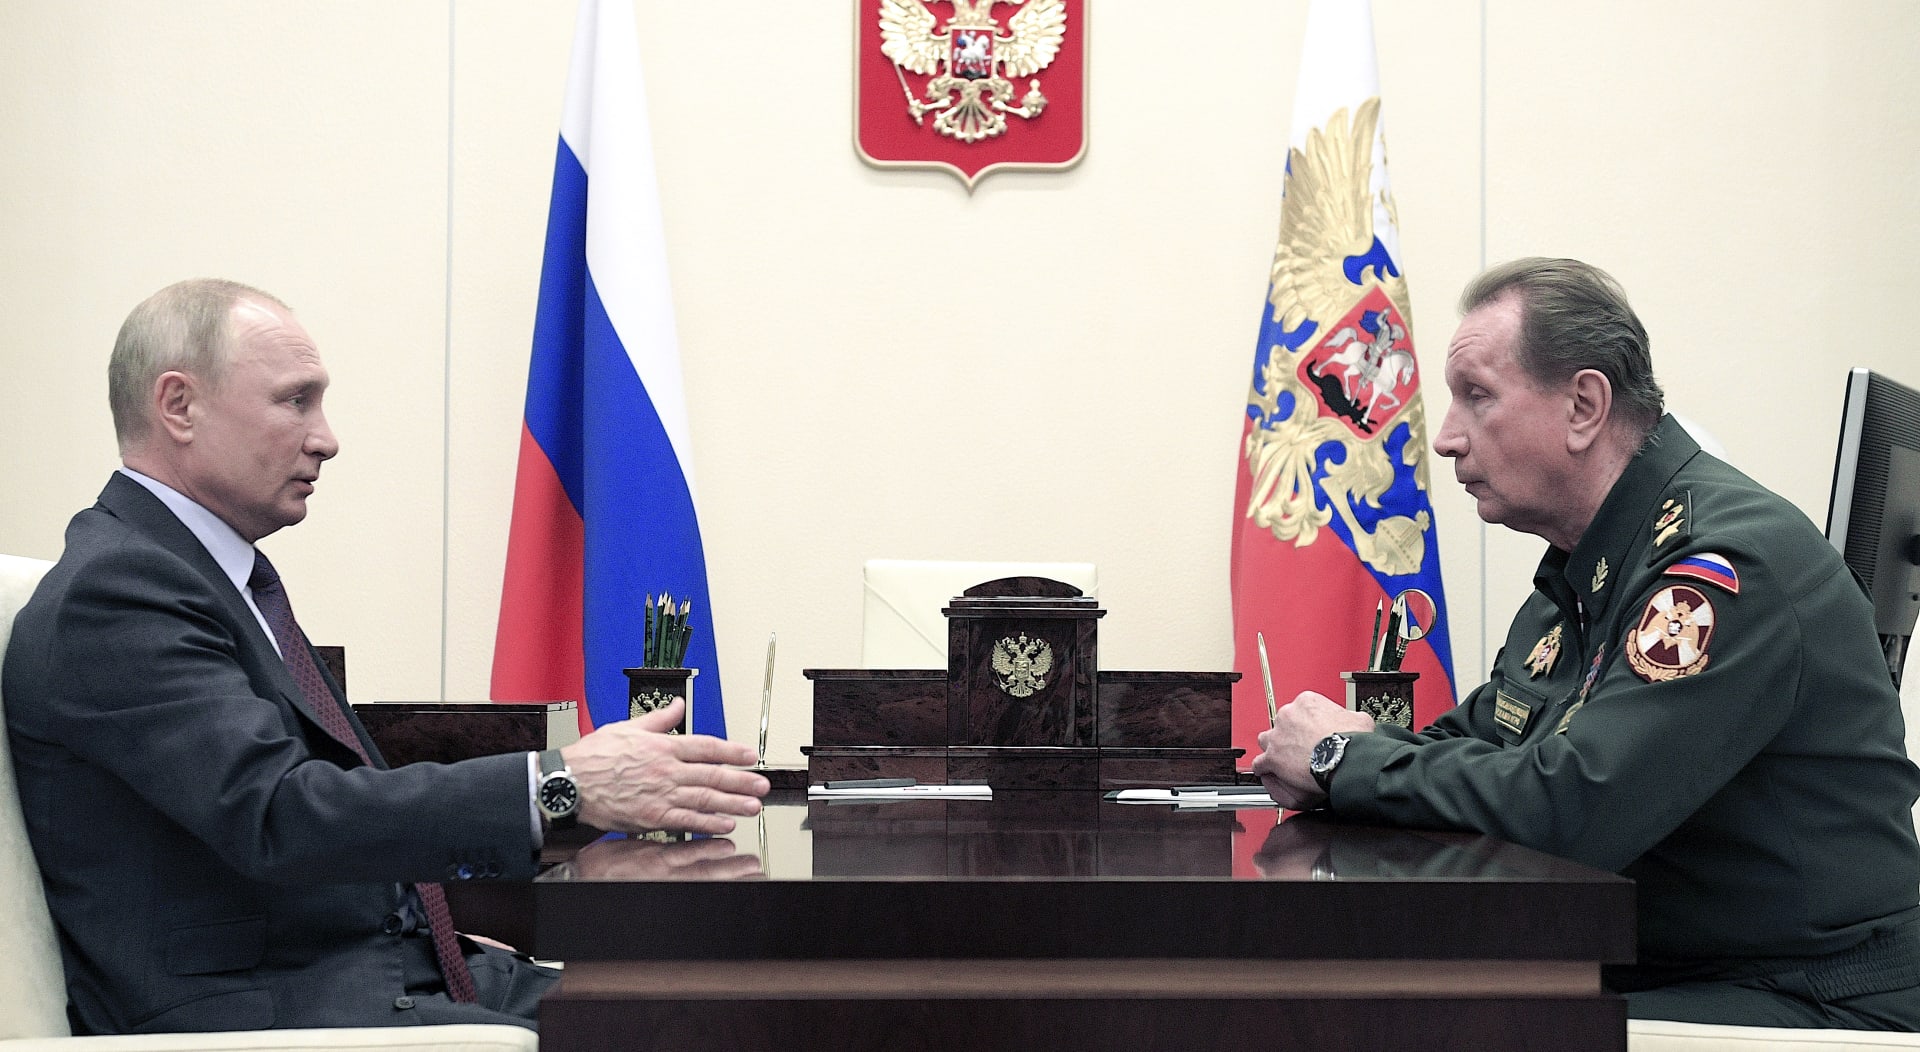 Ruský prezident Vladimir Putin rozmlouvá se svým bývalým osobním strážcem Viktorem Zolotovem, ze kterého později udělal velitele vnitřní vojenské jednotky Rosgvardije.